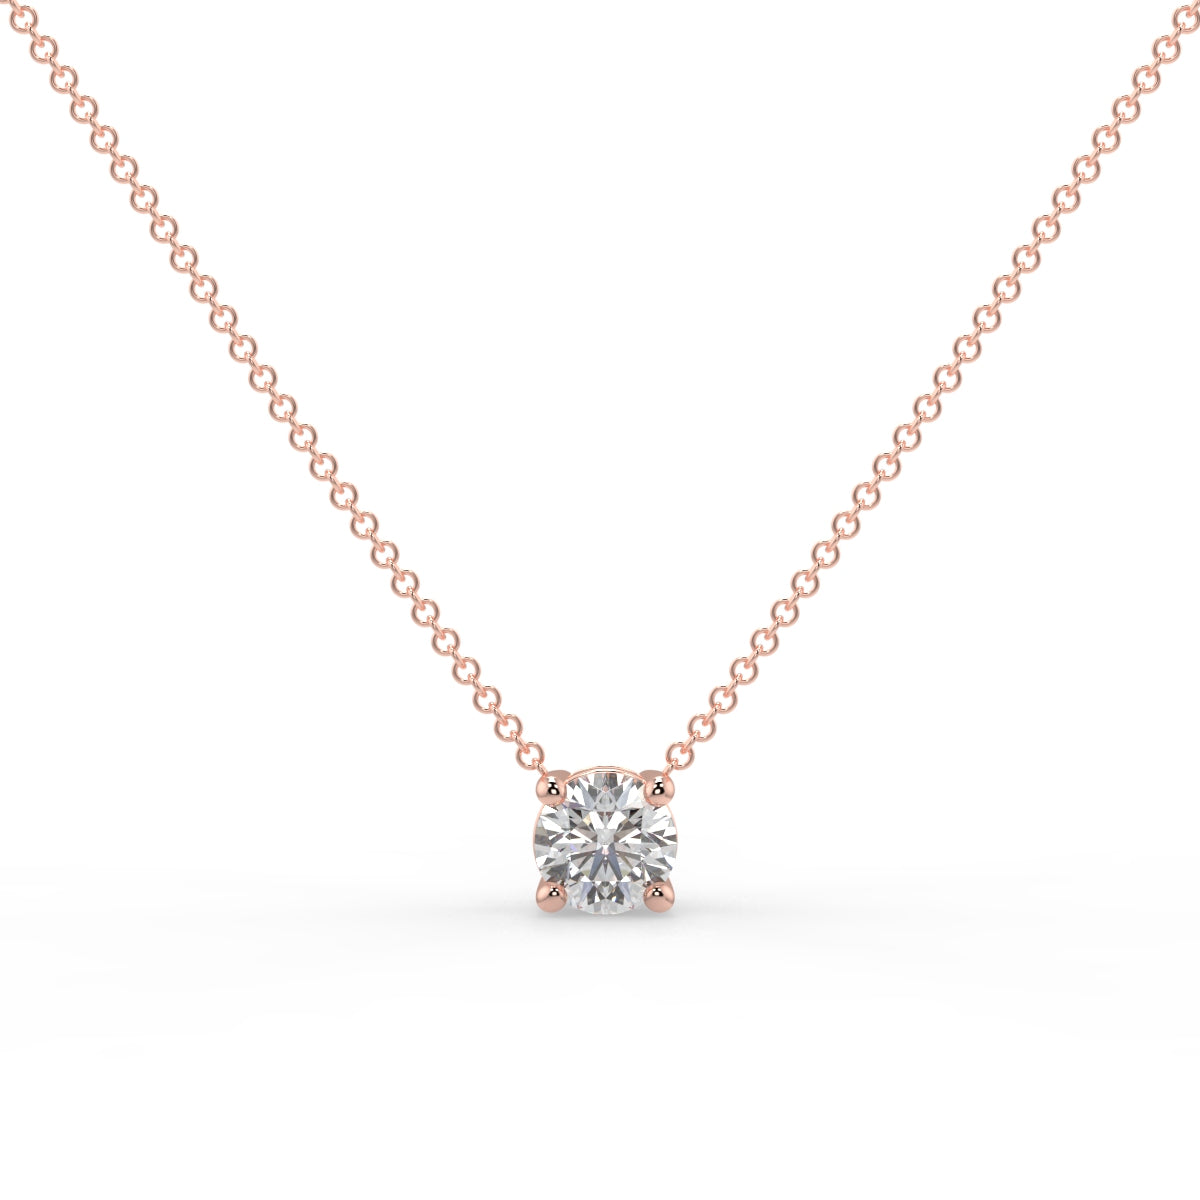 Sophia Solitaire Necklace Round Brilliant Cut Diamond 0.5 carat 